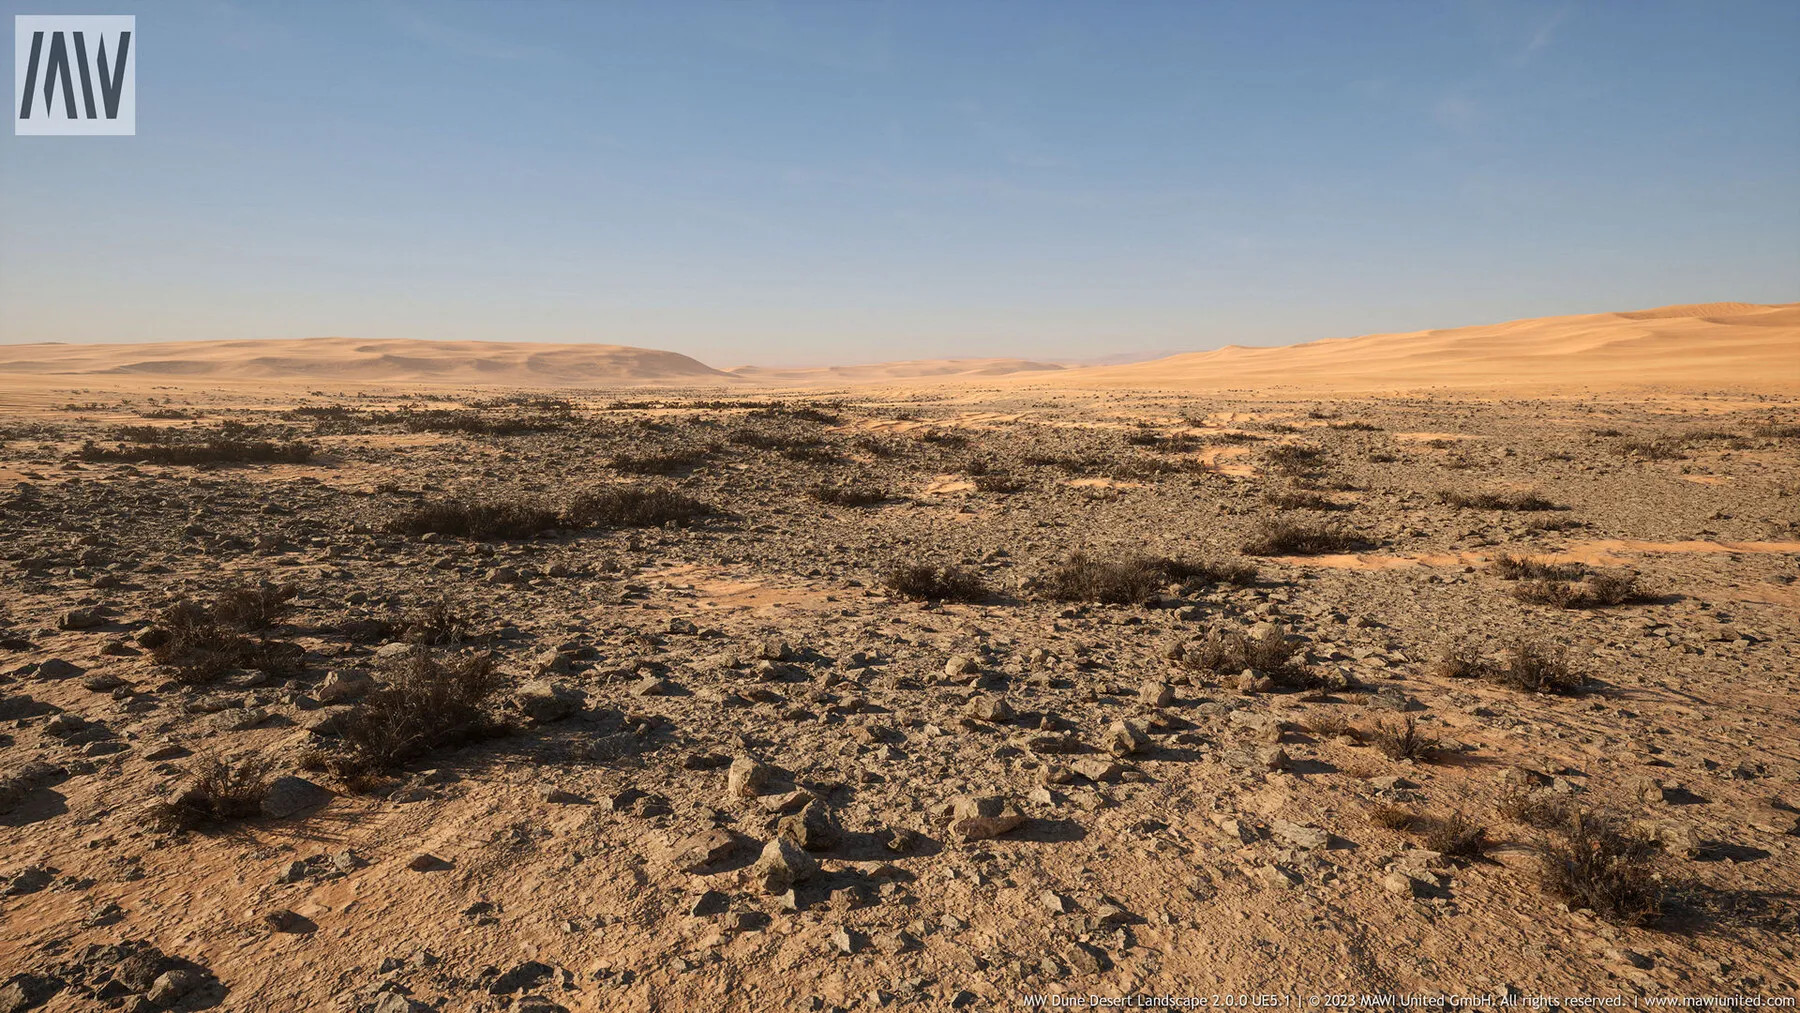 mw_dune_desert_landscape_runtime_demo7_pcgh.jpg